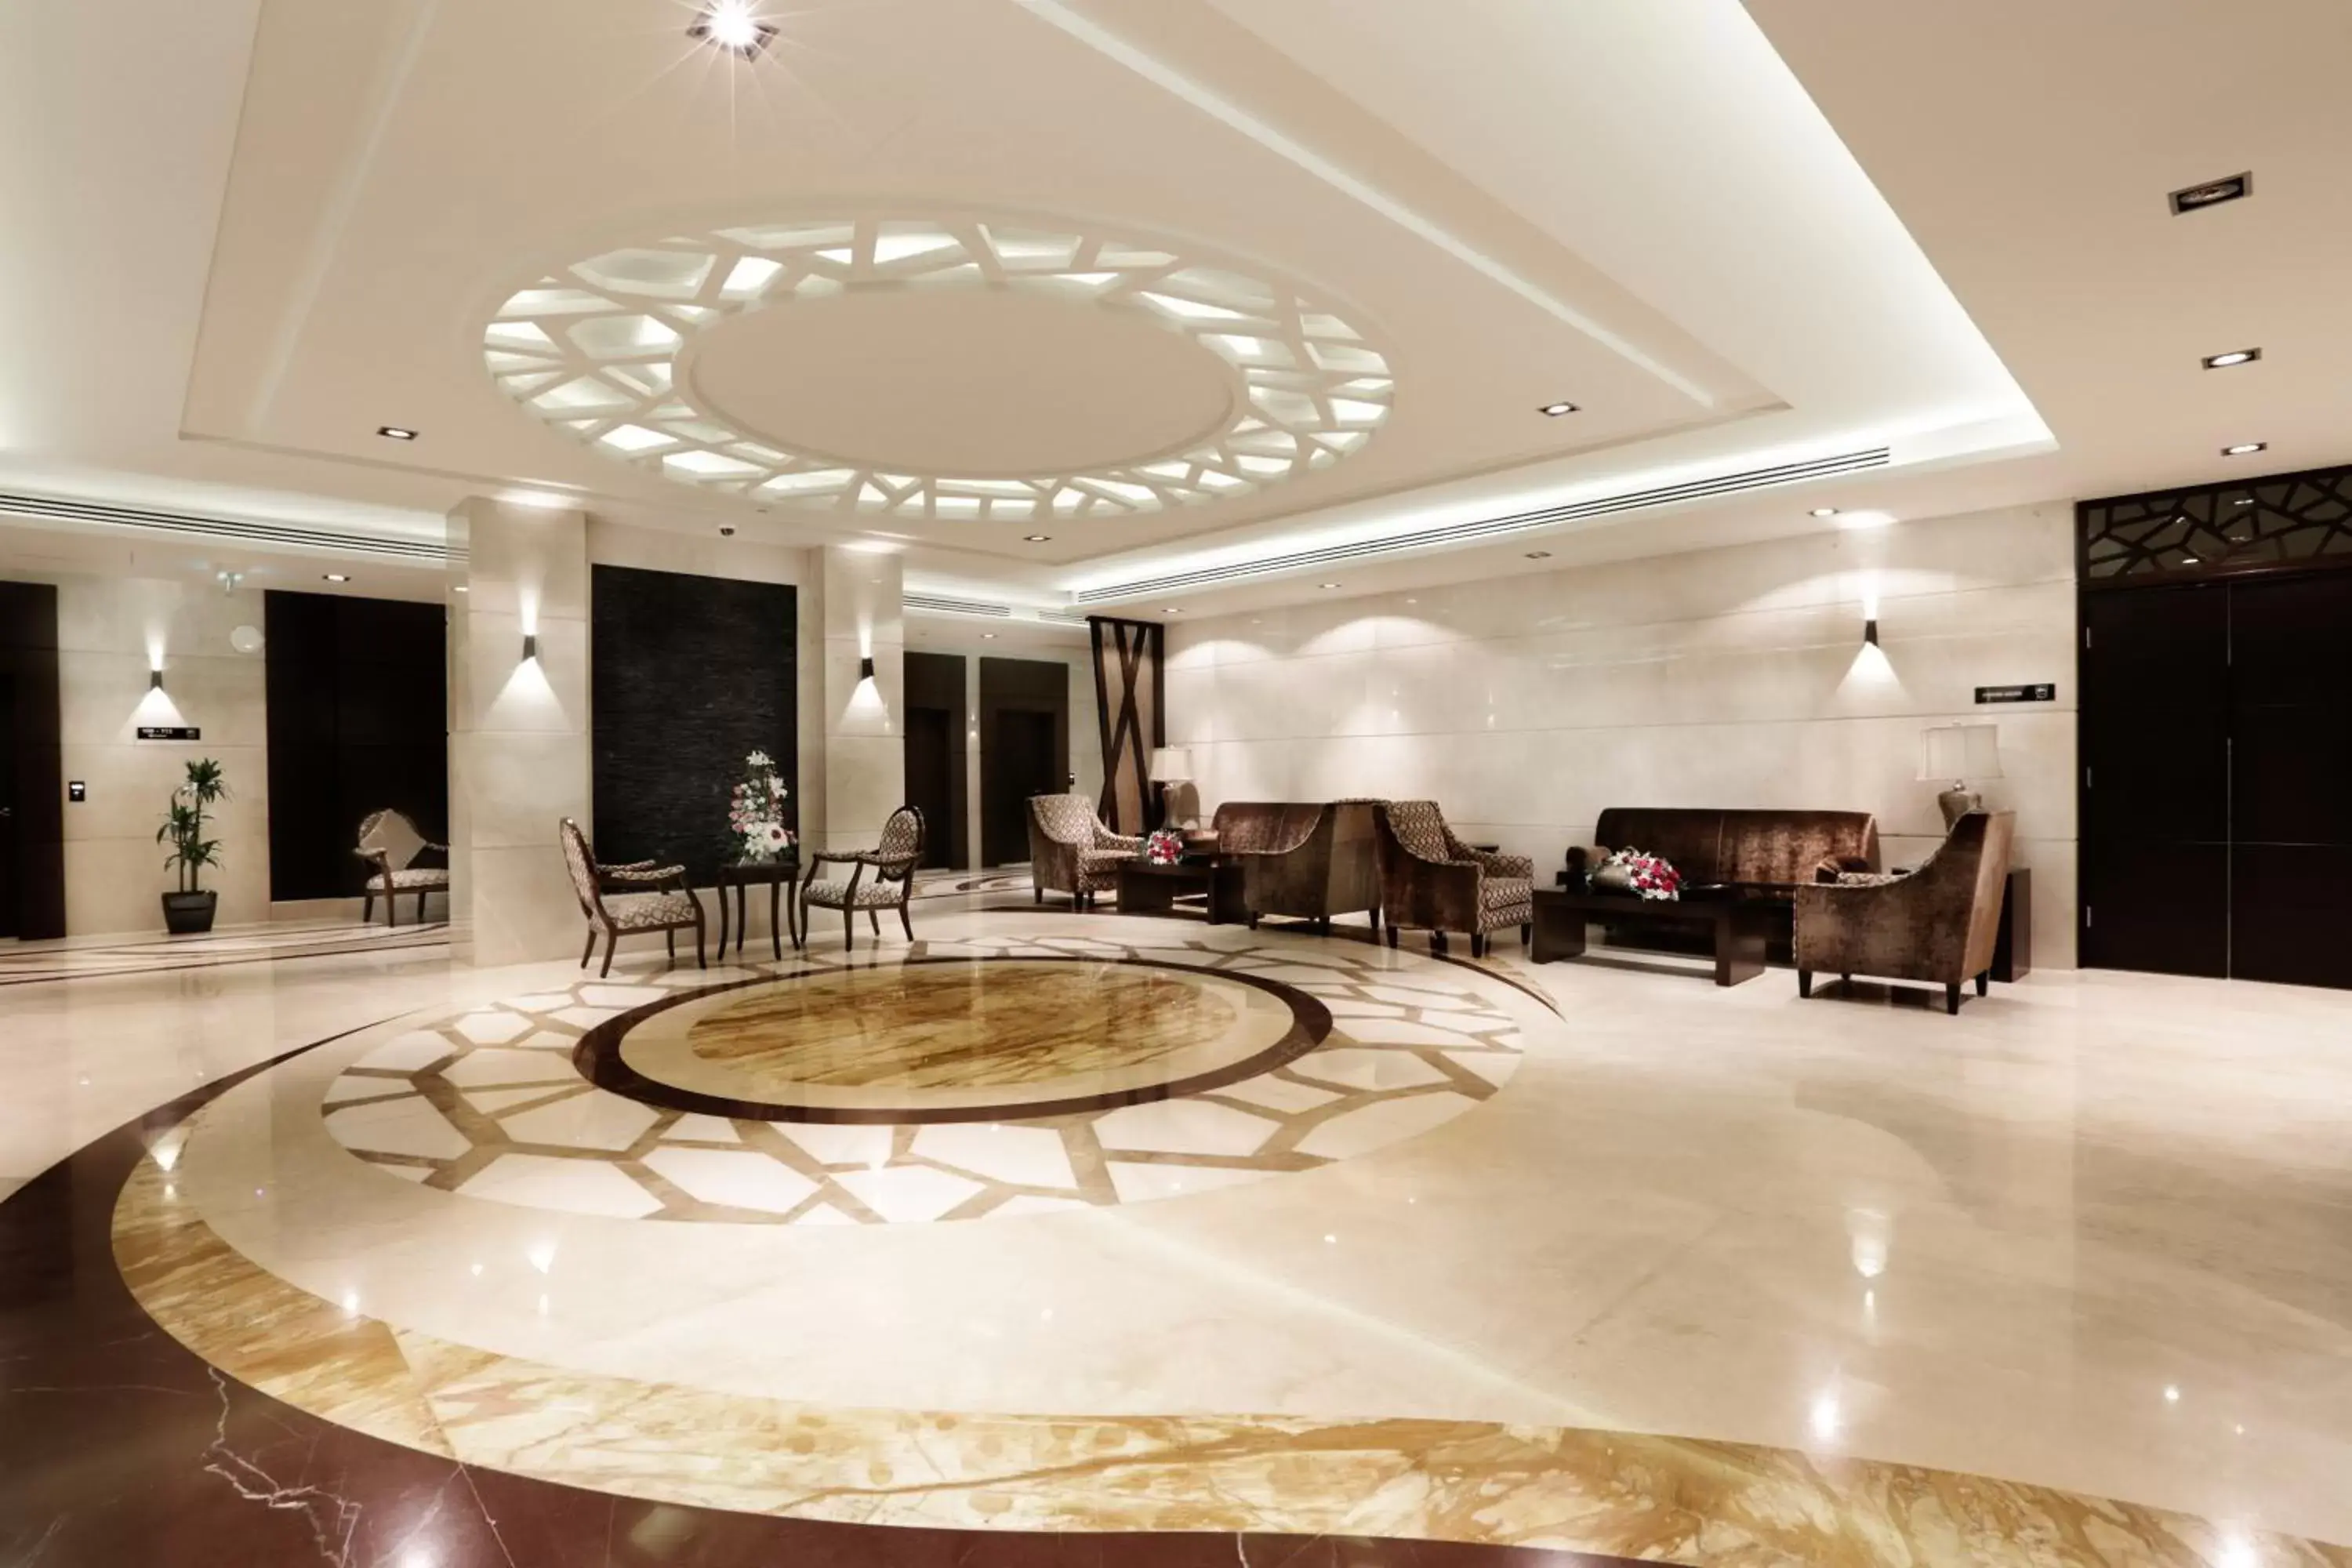 Lobby or reception, Lobby/Reception in Aswar Hotel Suites Riyadh